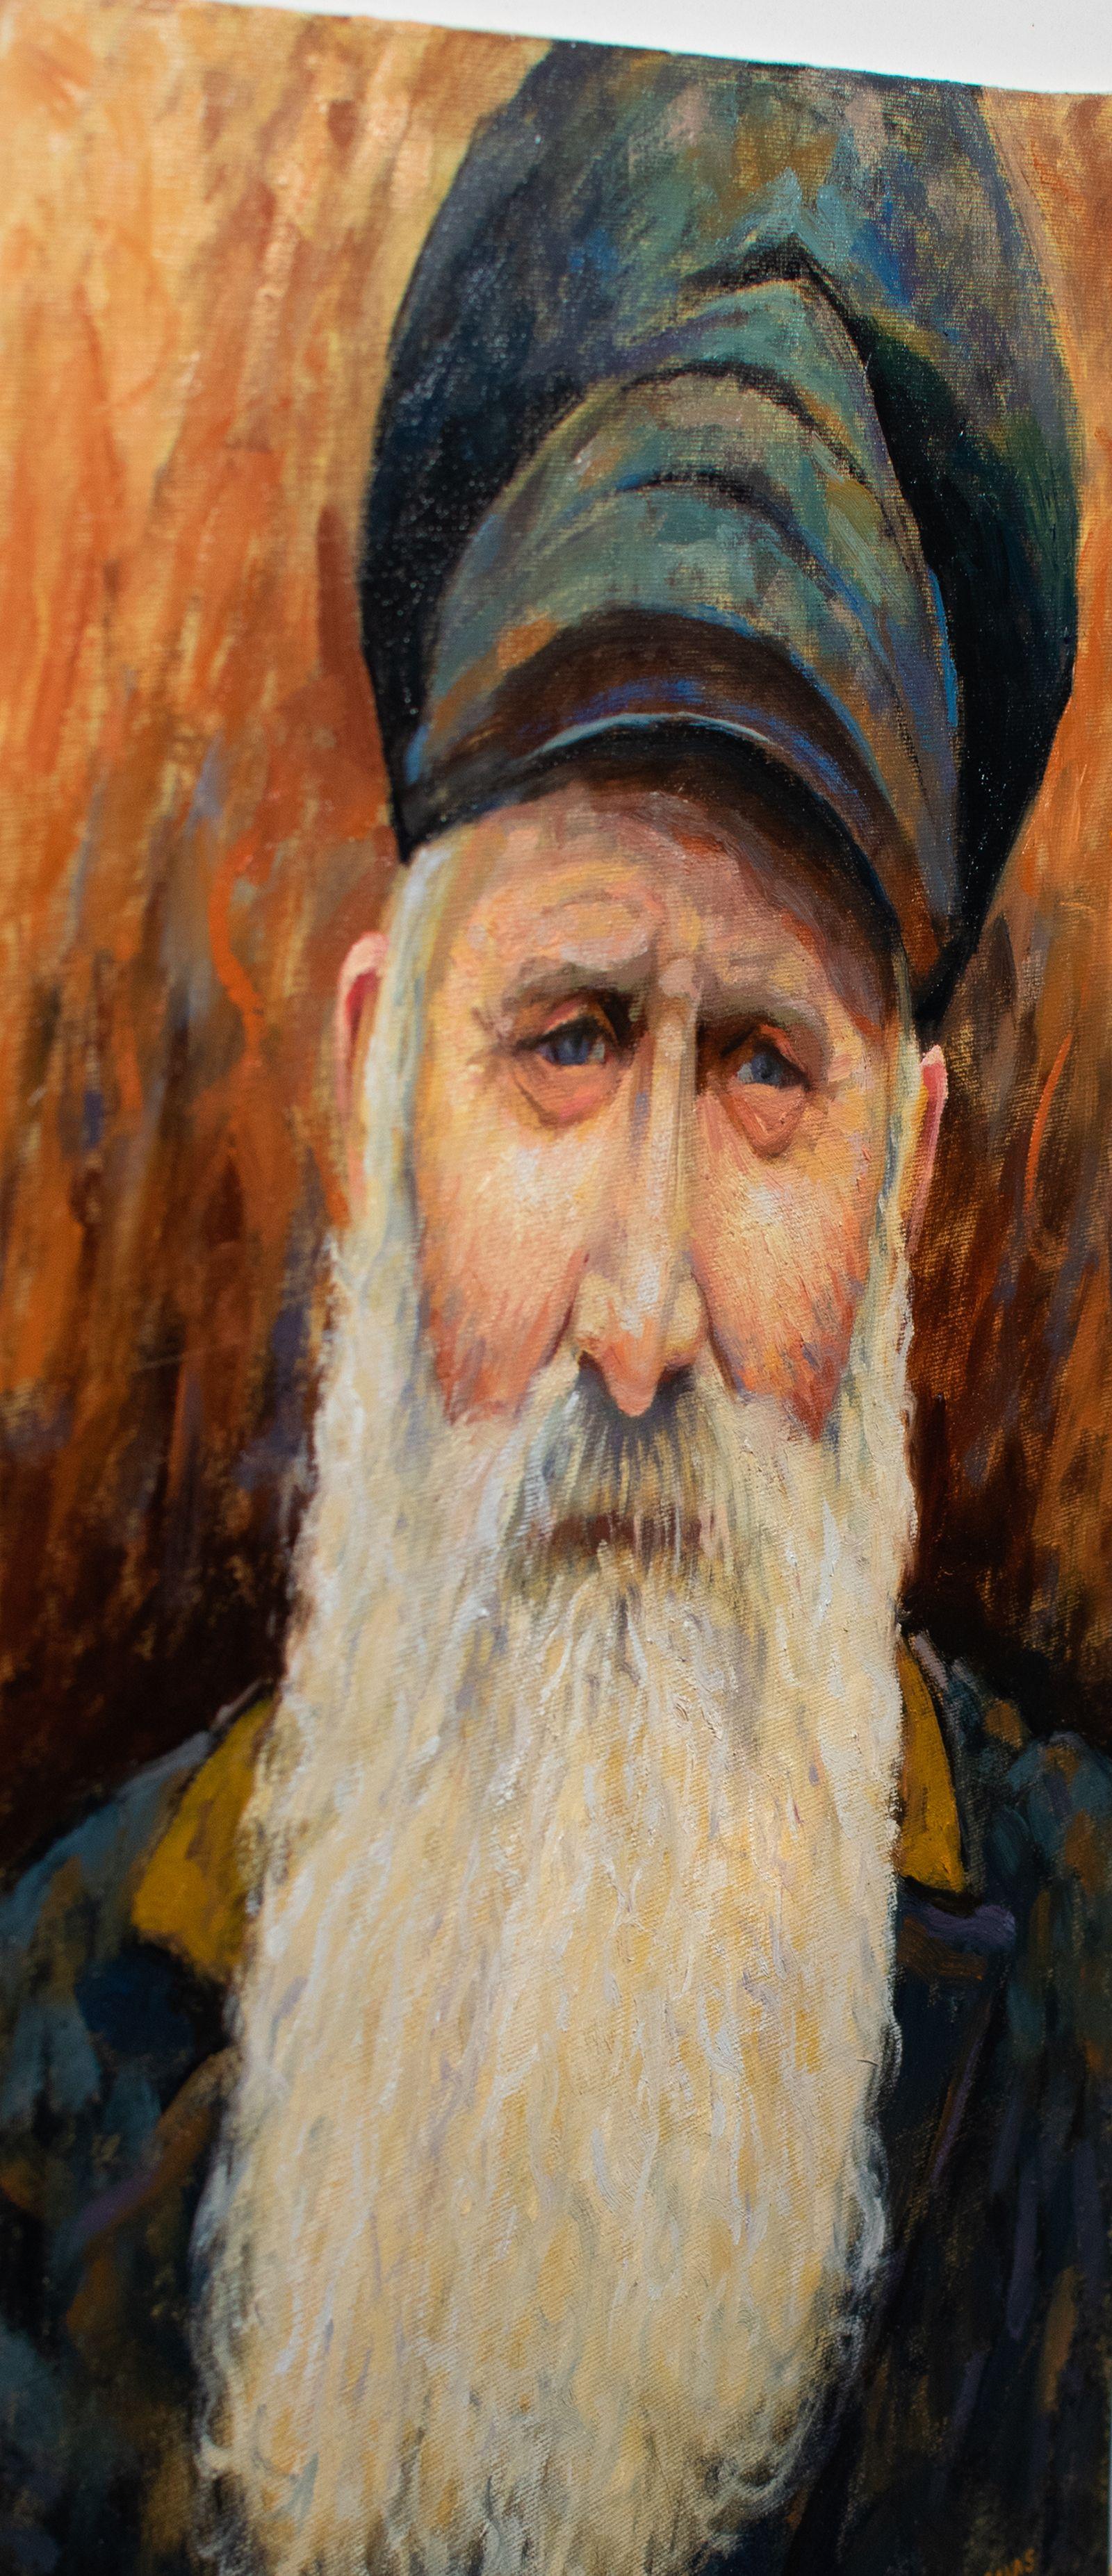 Il s'agit d'une peinture à l'huile originale représentant un vieux pêcheur suédois, réalisée à l'aide de techniques impressionnistes et des meilleures peintures à l'huile professionnelles. Le tableau est de 46 cm x 33 cm sur une toile fixée à un